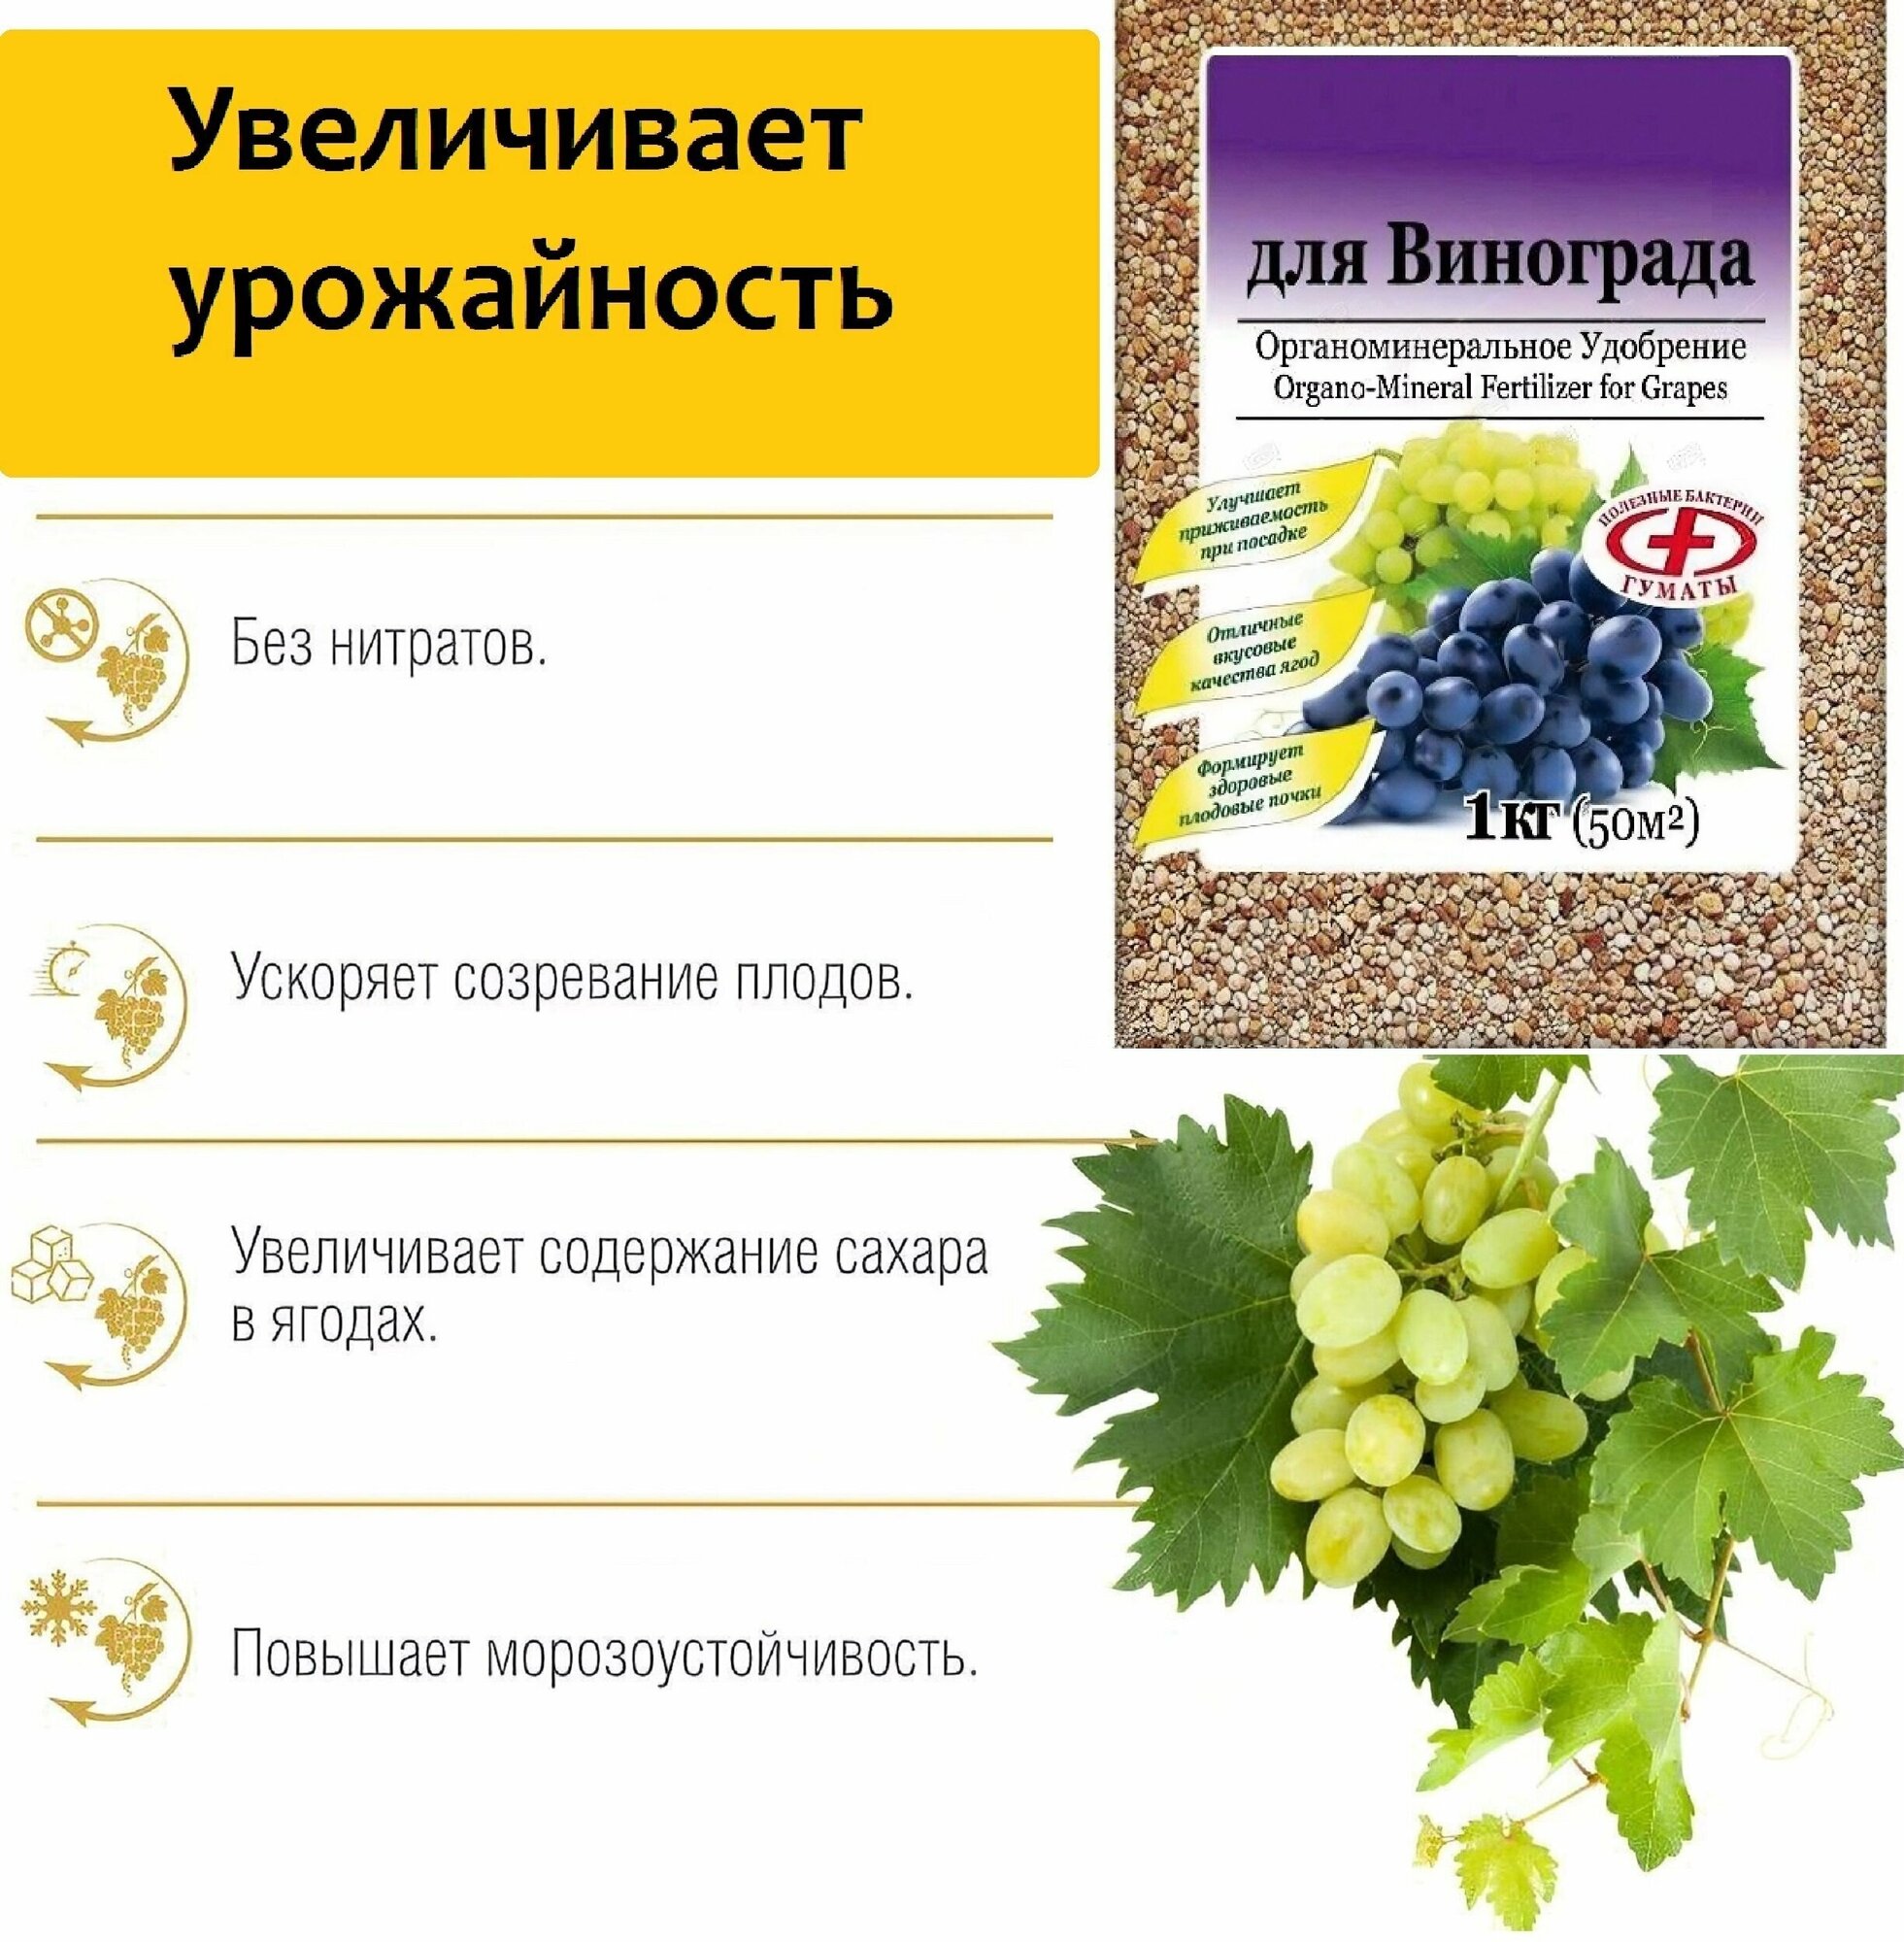 Удобрение комплексное органо-минеральное "Ому" для винограда 1 кг, питательная подкормка длительного действия, насыщает почву микроэлементами в течение всего года